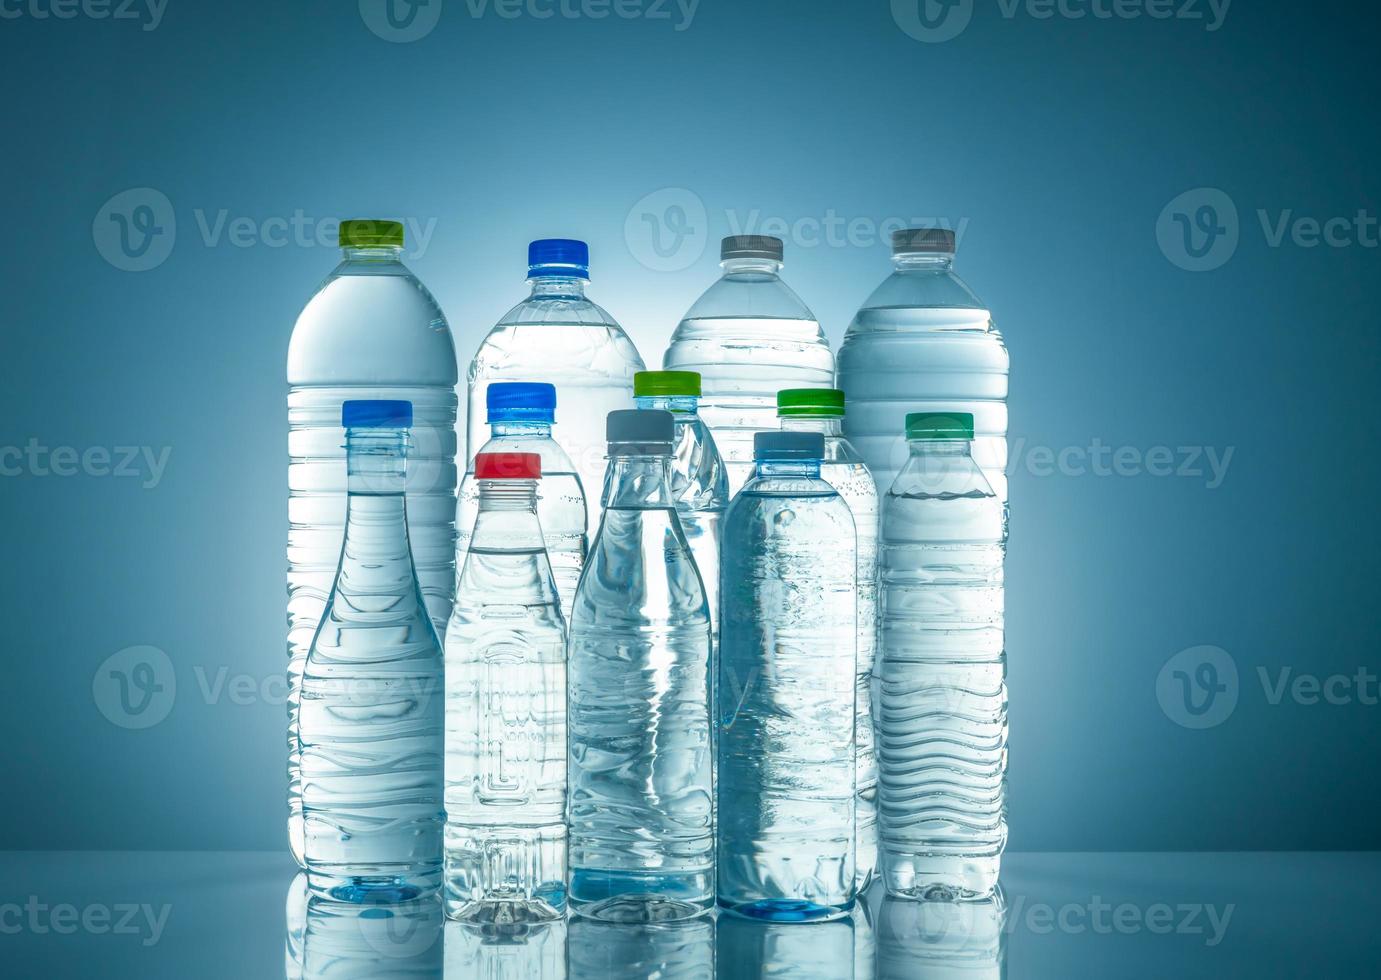 ensemble de bouteille d'eau en plastique transparent avec étiquette vierge. bouteille d'eau claire et de minéraux naturels avec bouchon blanc, vert, rouge et bleu. boisson saine. collection de bouteille en plastique avec liquide plein. photo